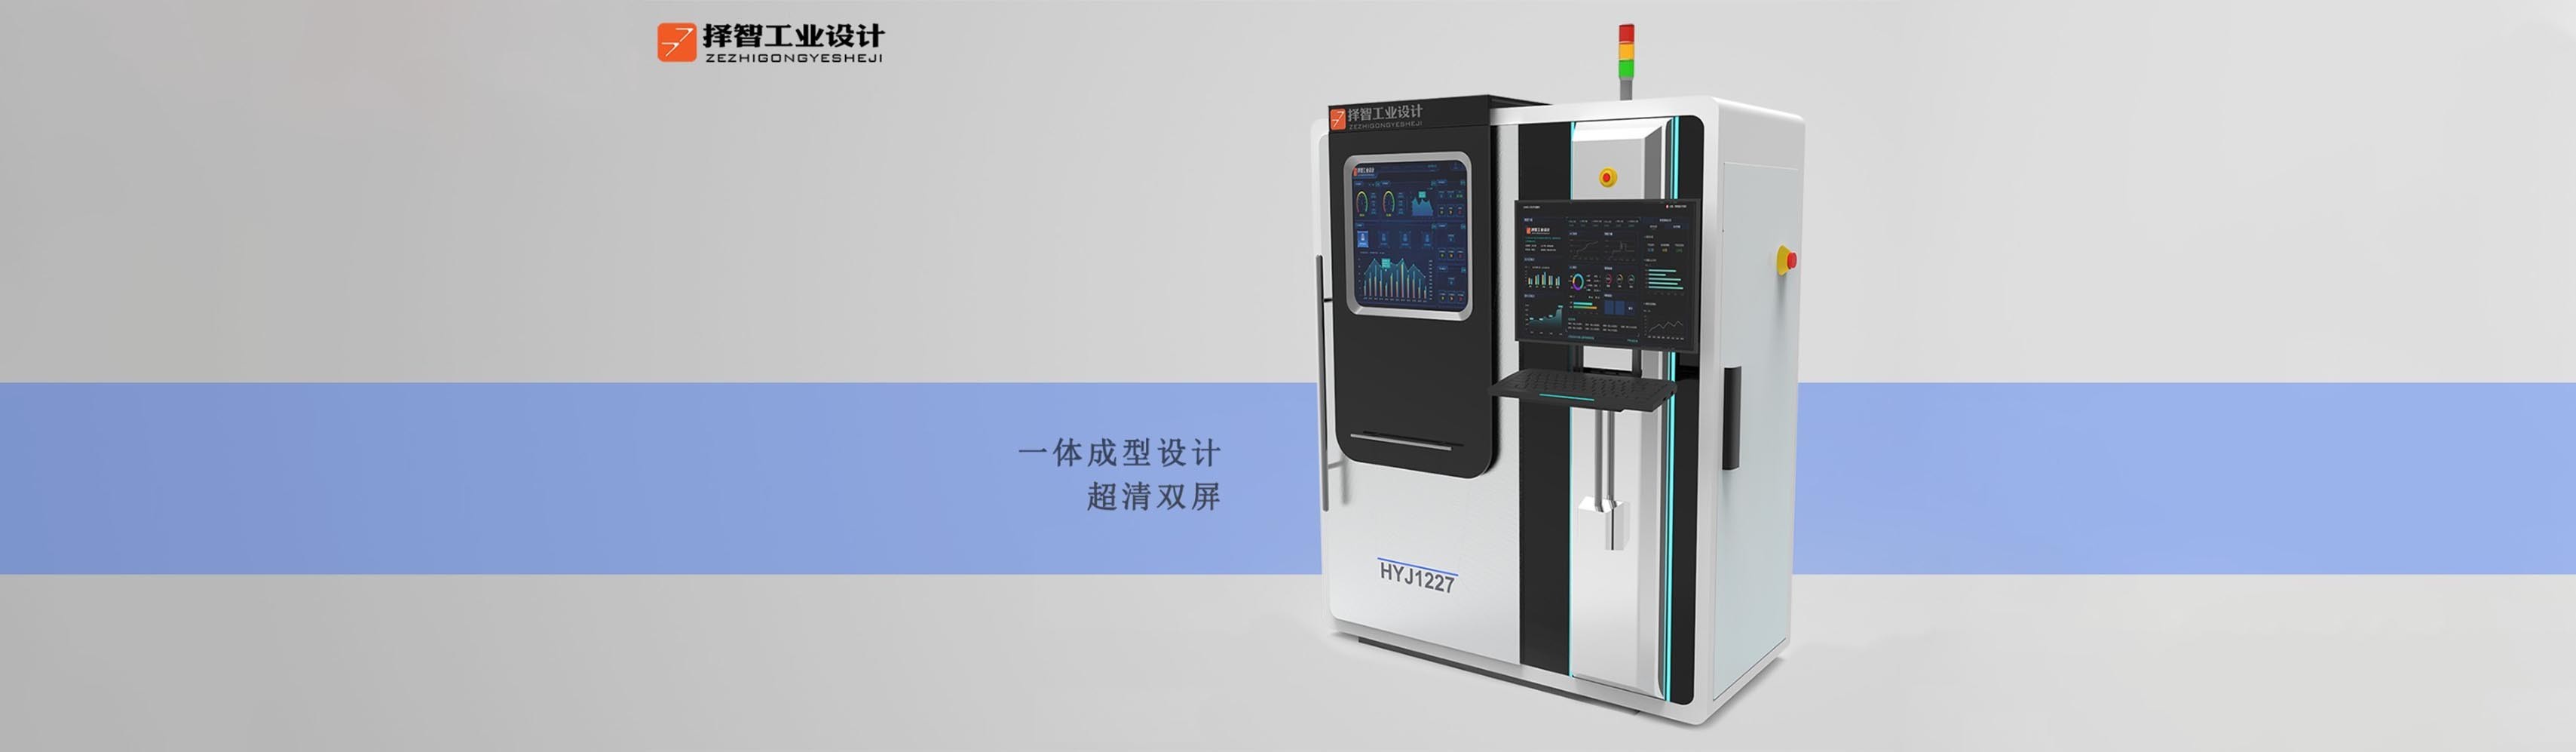 上海苏州产品设计 工业产品外观设计 结构设计 医疗检测设备外观设计